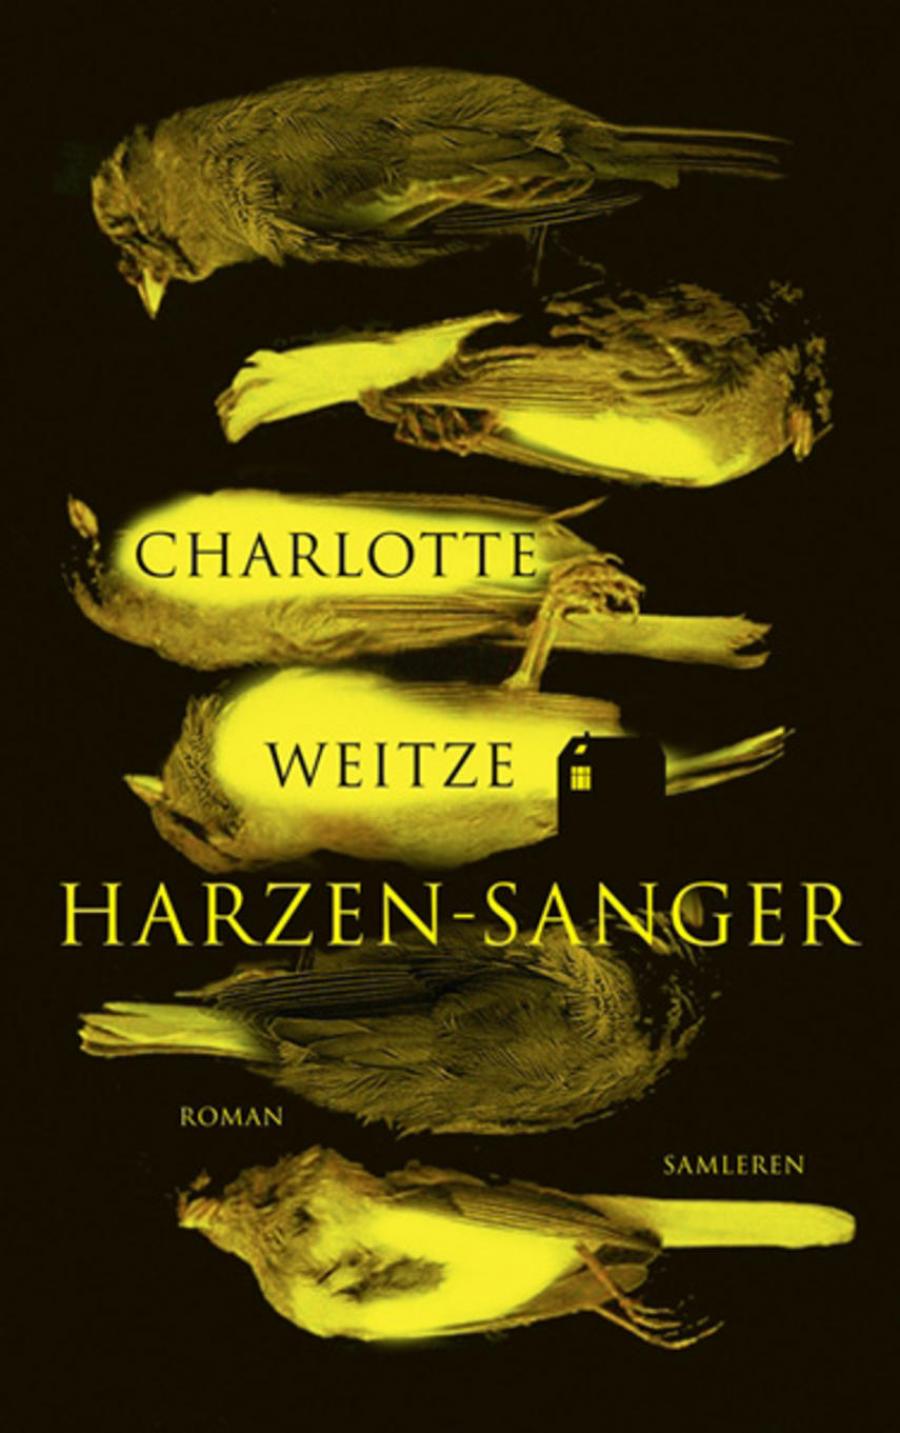 Harzen-sanger af Charlotte Weitze